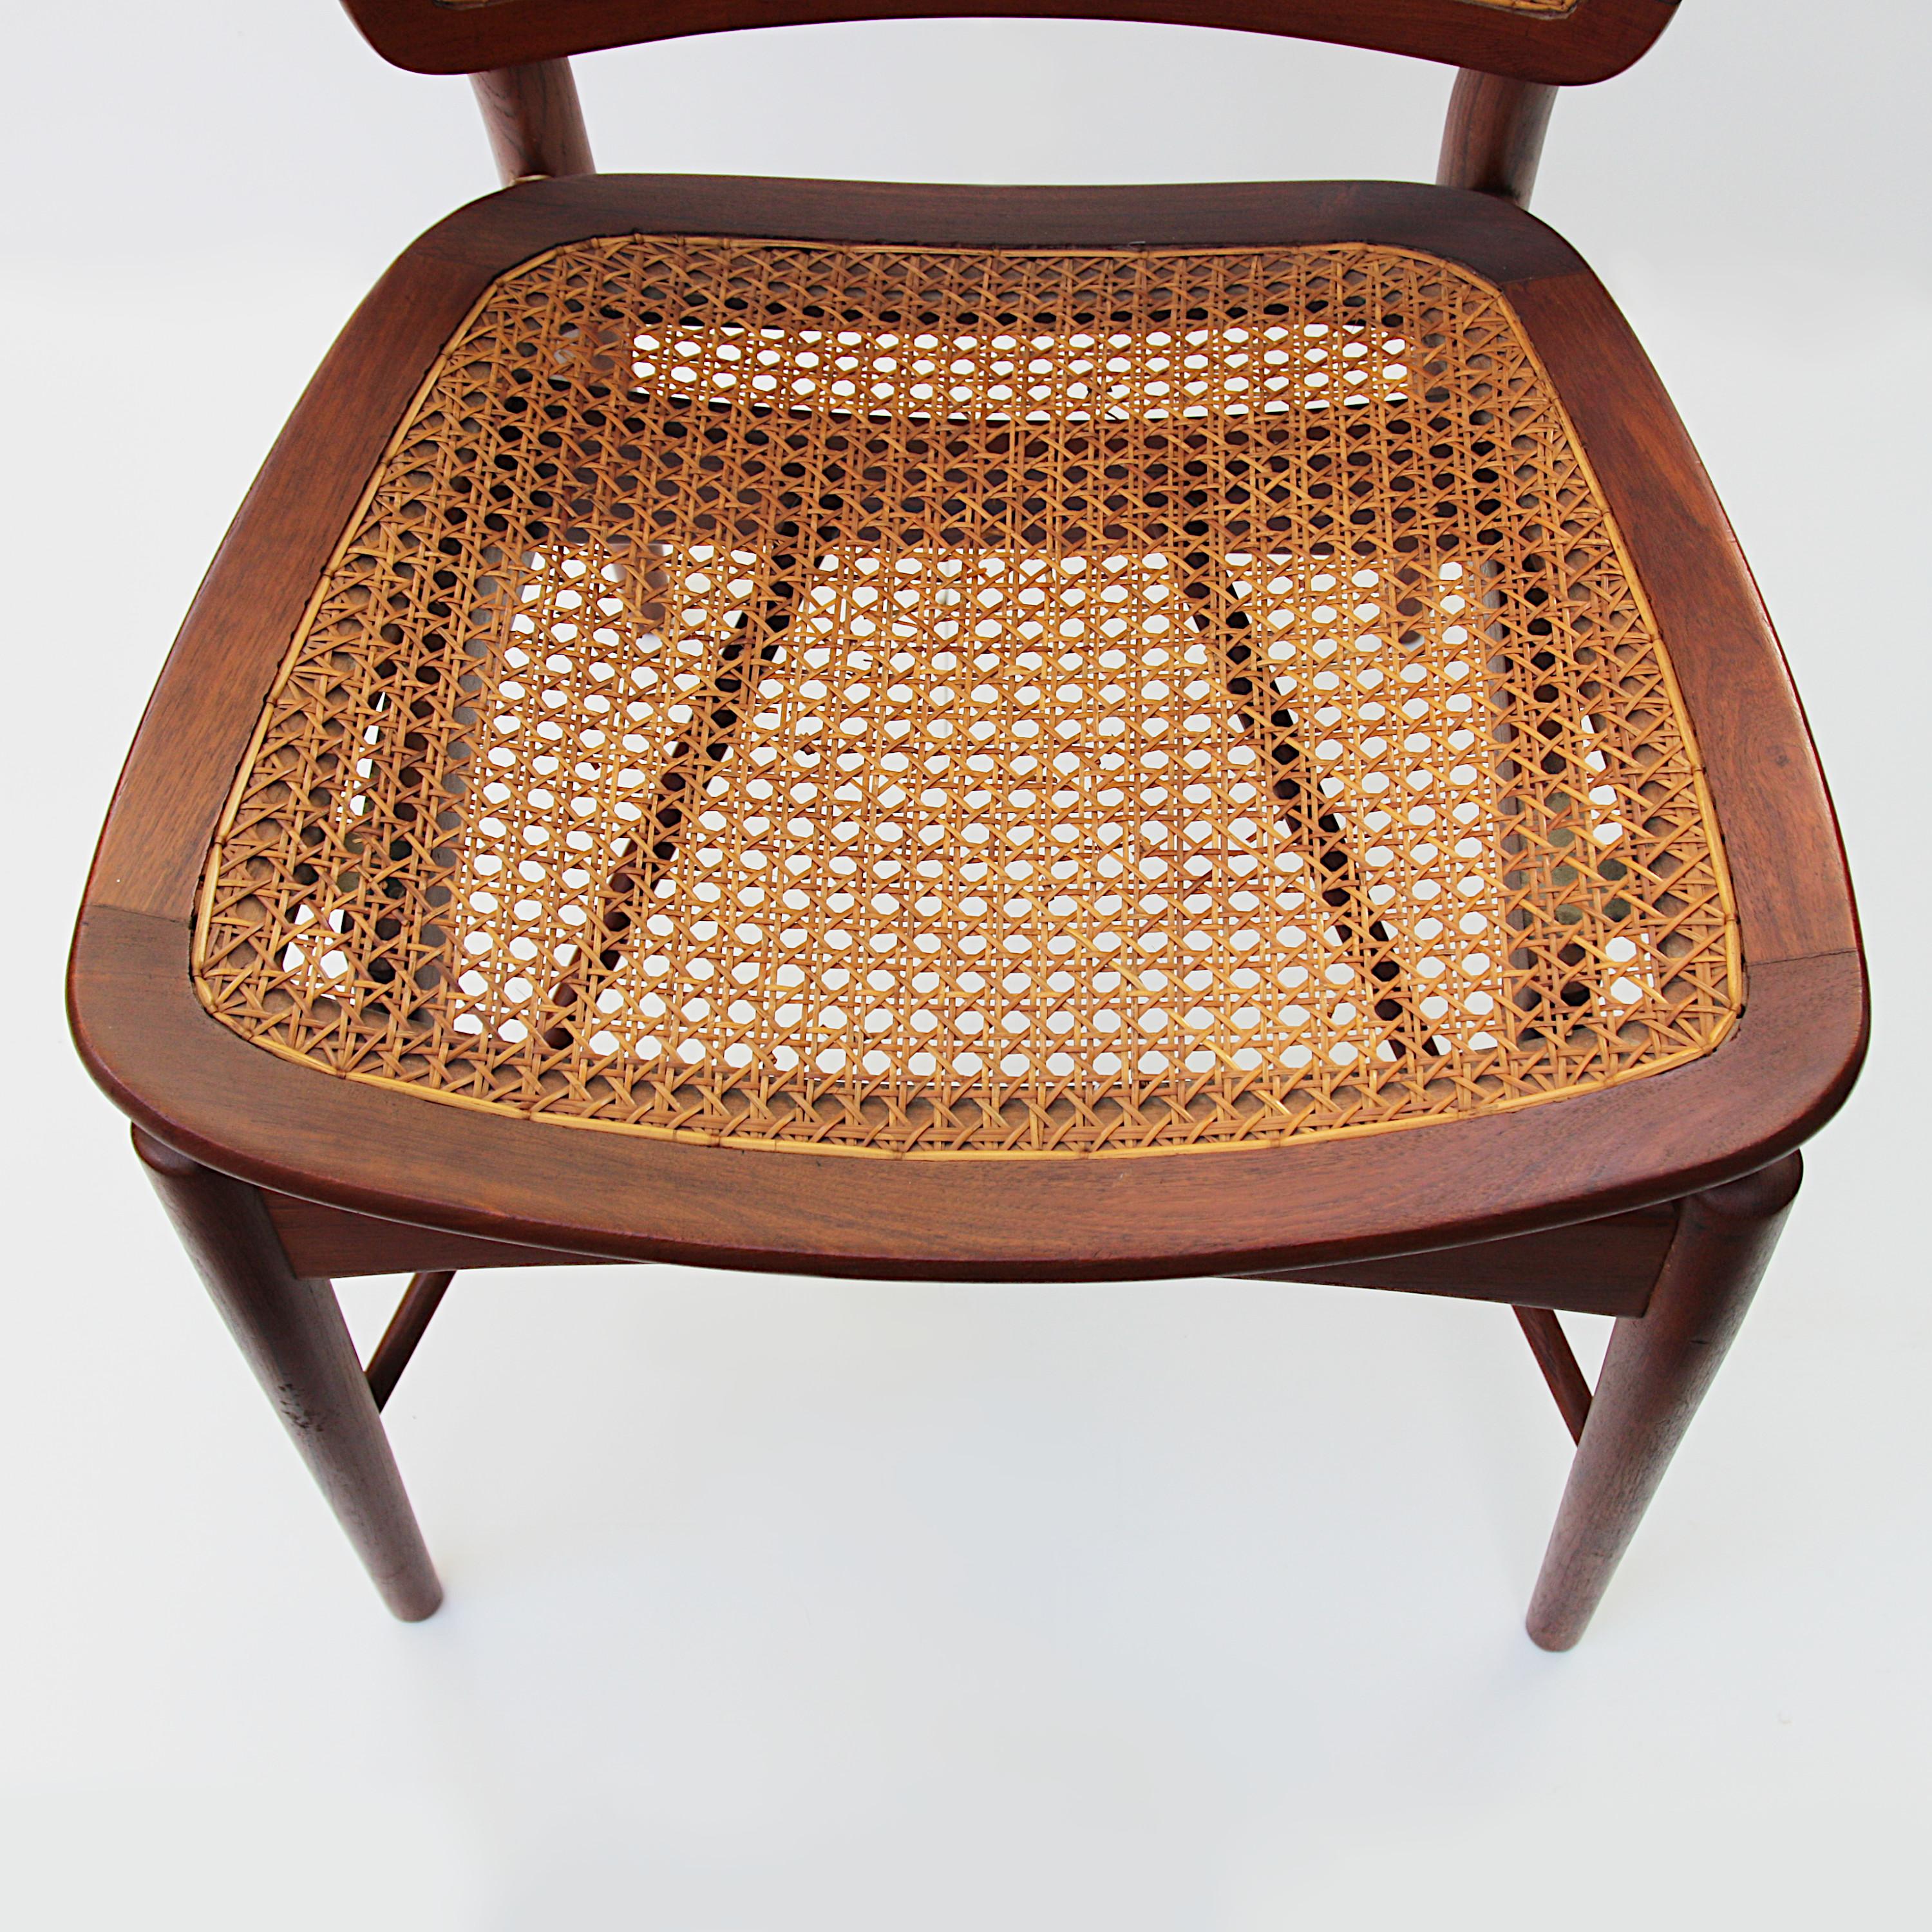 Original Finn Juhl Model NV 51/403 Teak & Cane Dining Side Chair by Baker 1